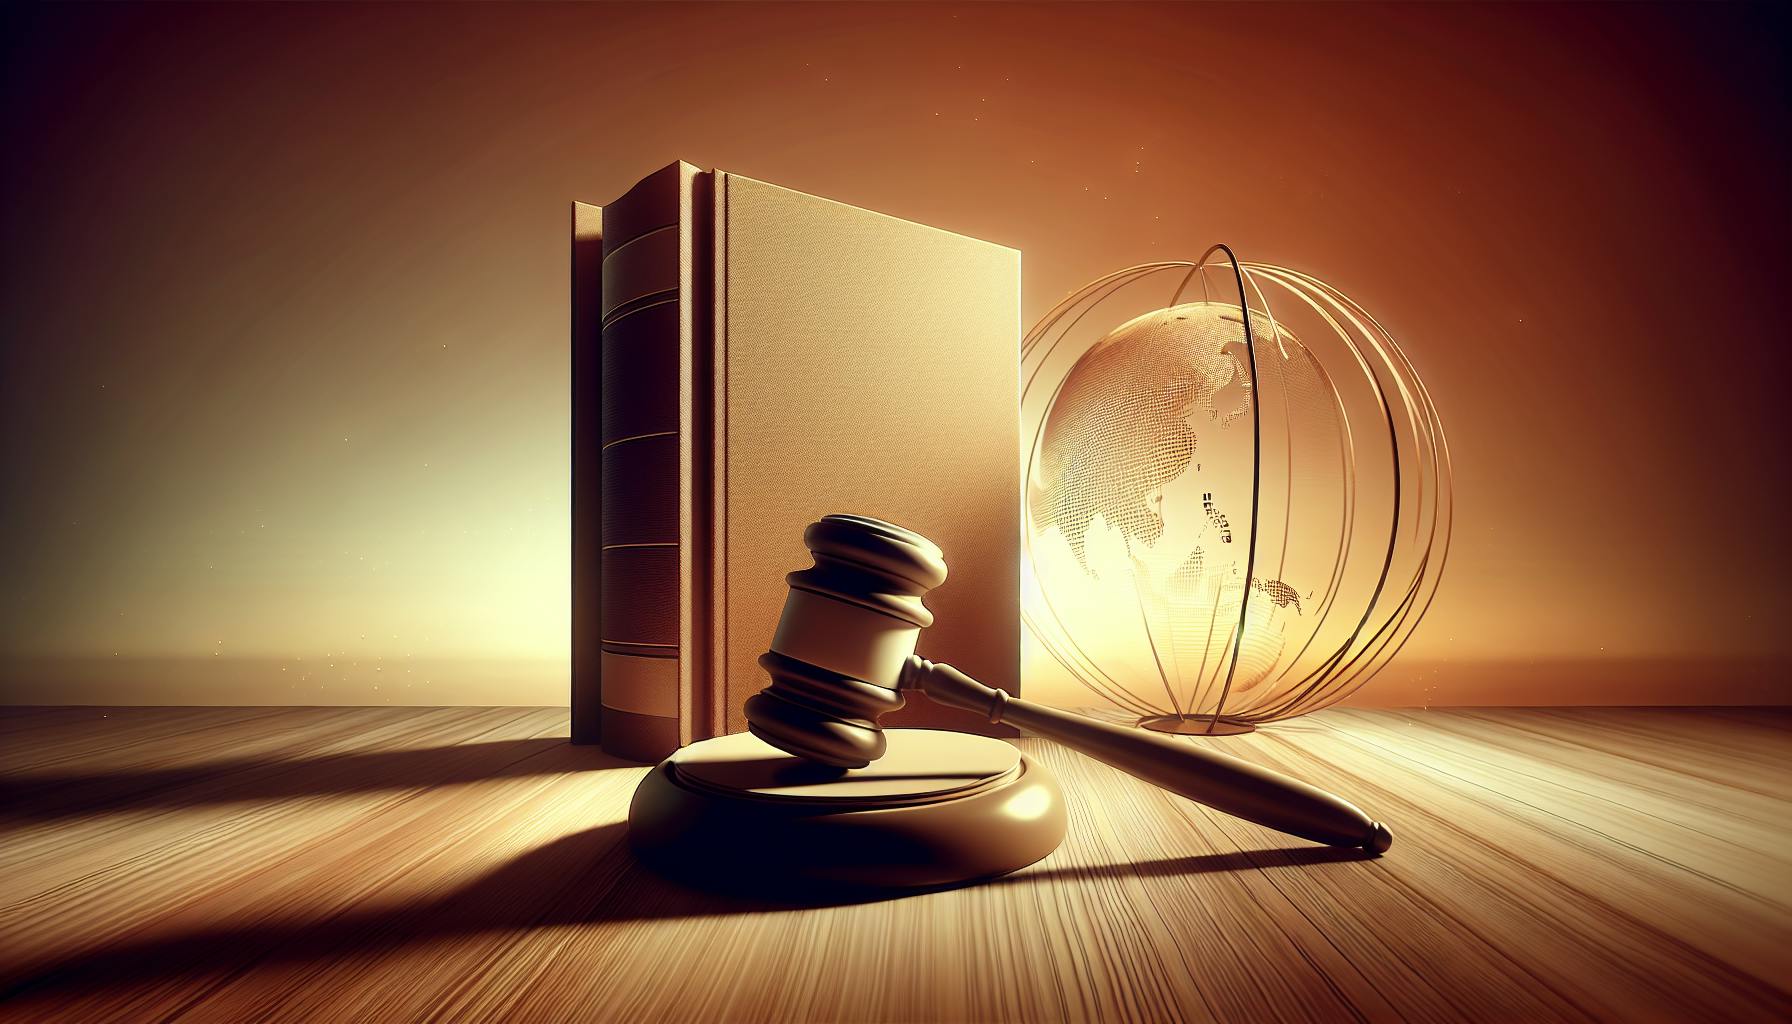 Sub Judice: Legal Concept Explained